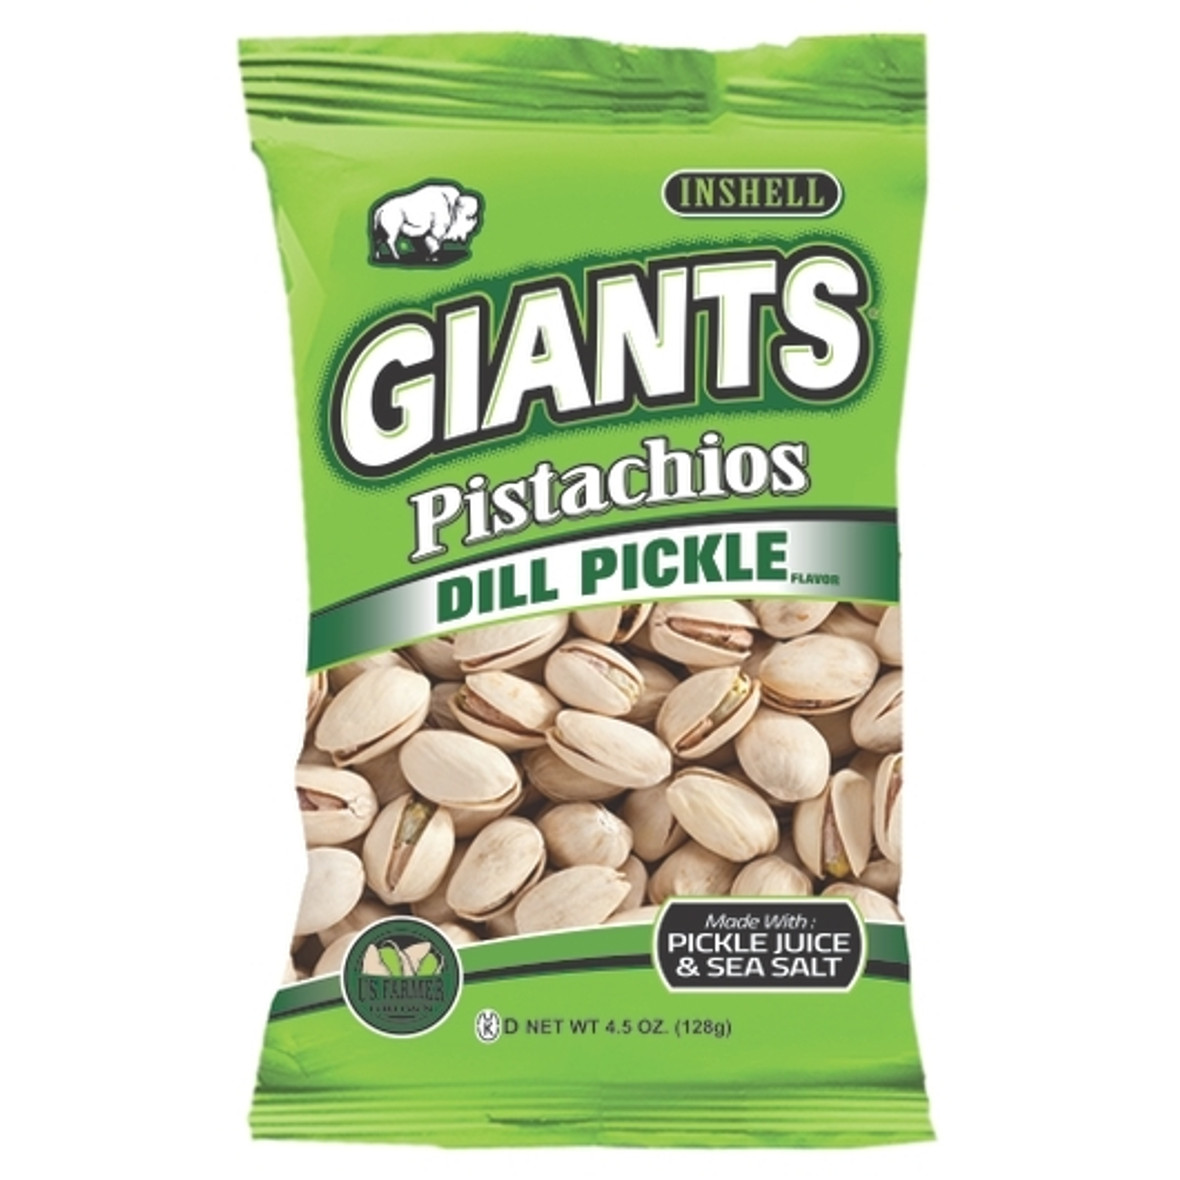 Giants Pistachios Dill Pickle, 4.5 Ounces, 8 Per Case